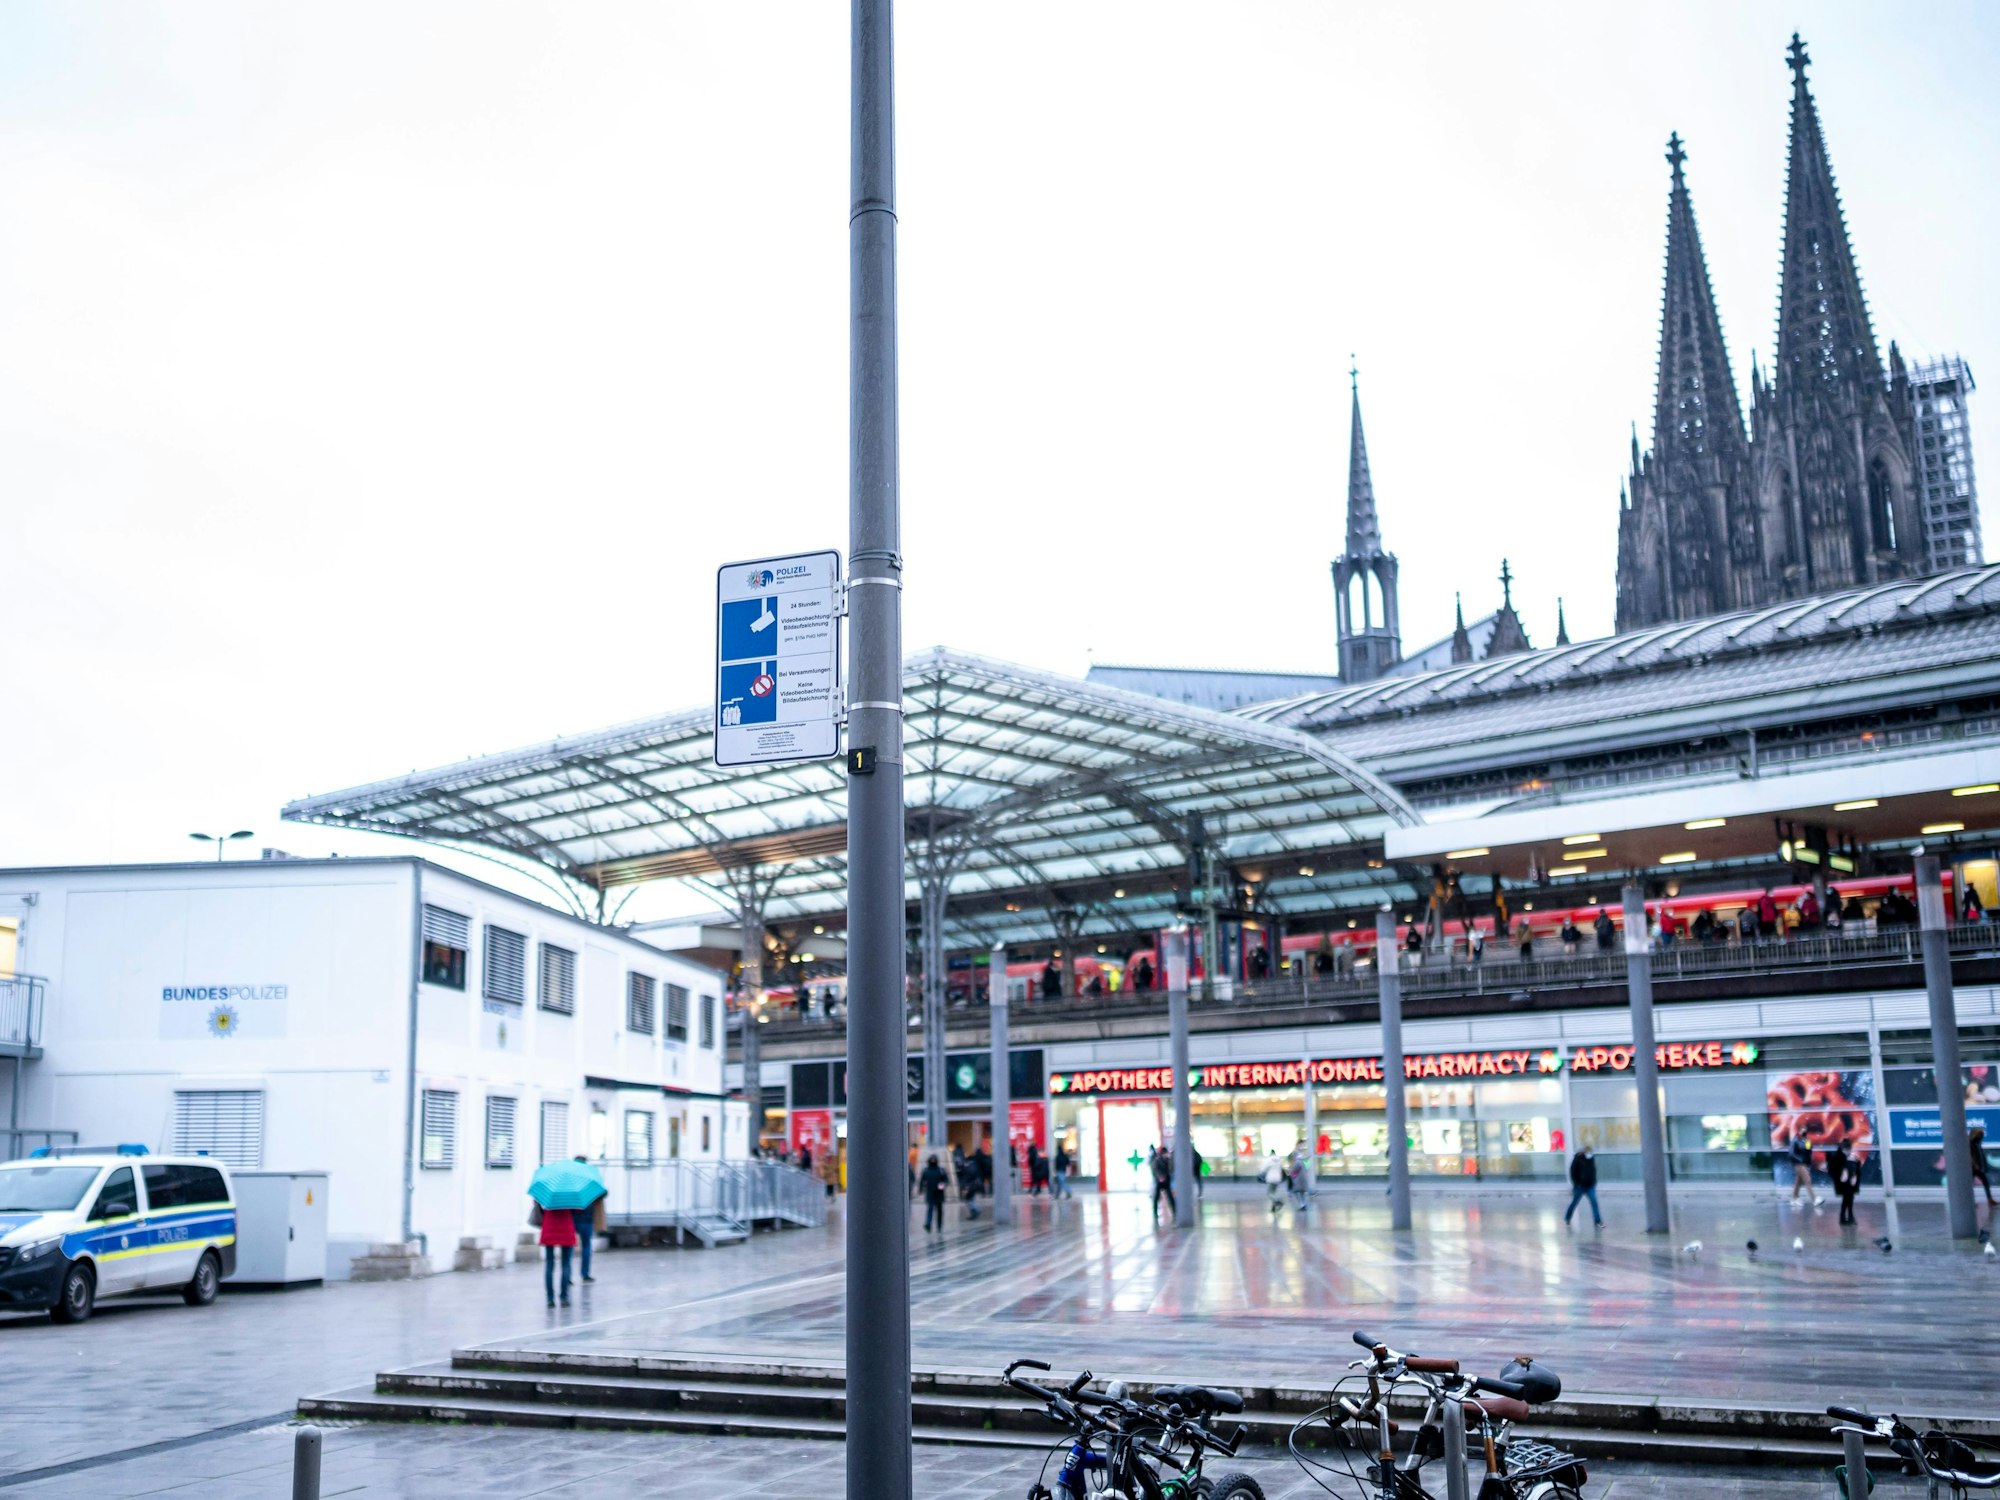 Überblick über den Breslauer Platz am Kölner Hauptbahnhof. Im Hintergrund ist der Kölner Dom zu sehen.